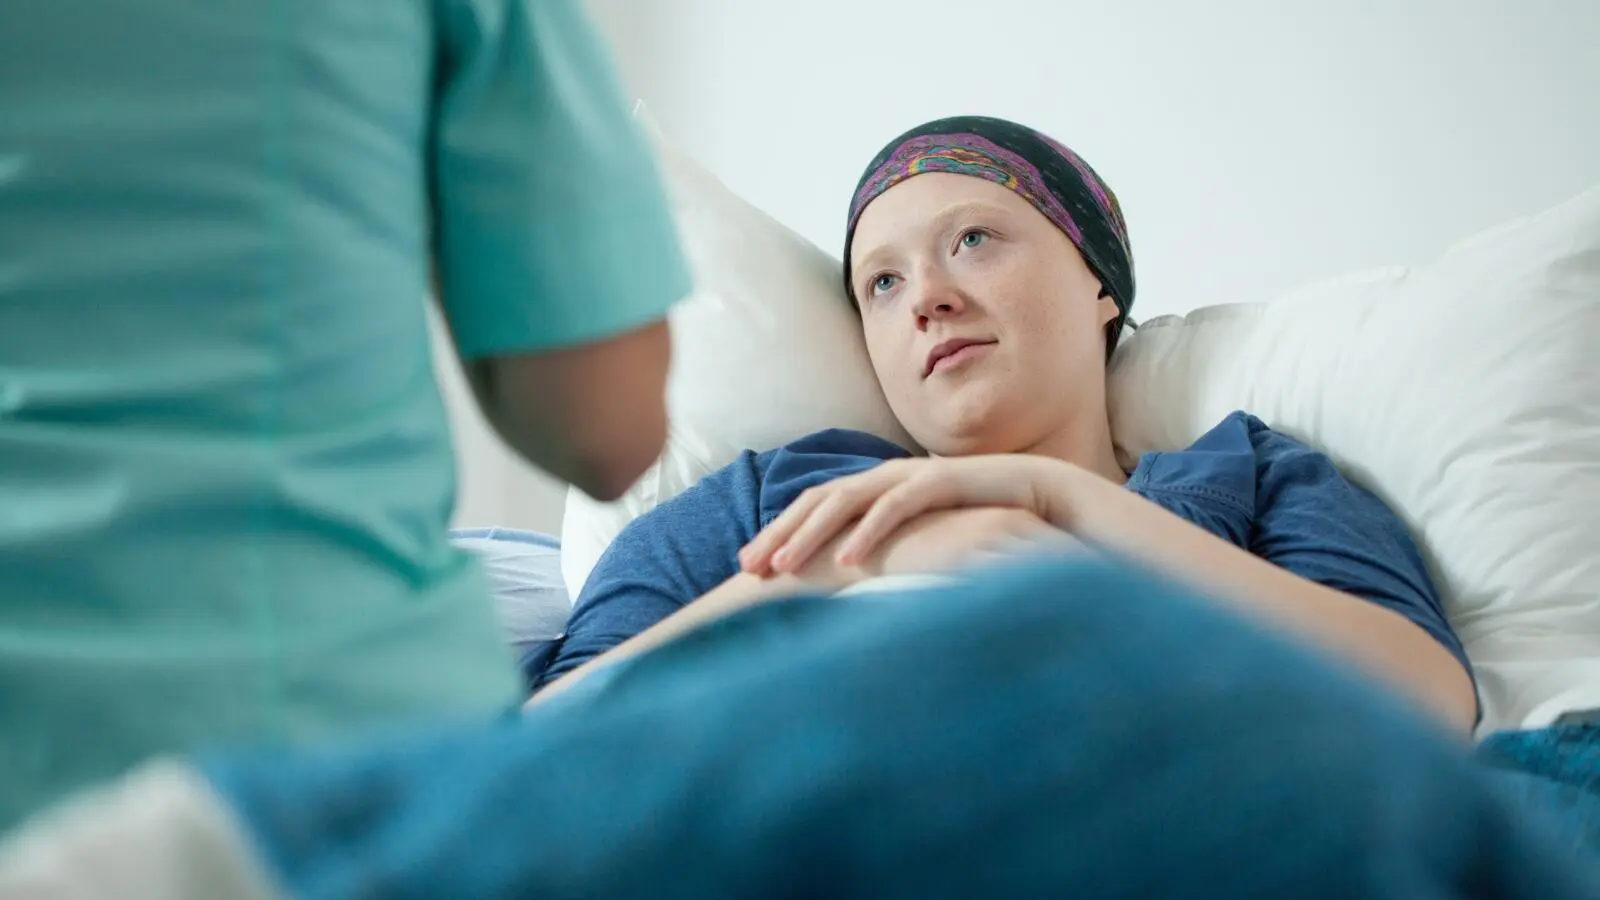 Att se malign cancer i en dröm - tolkning av drömmar online